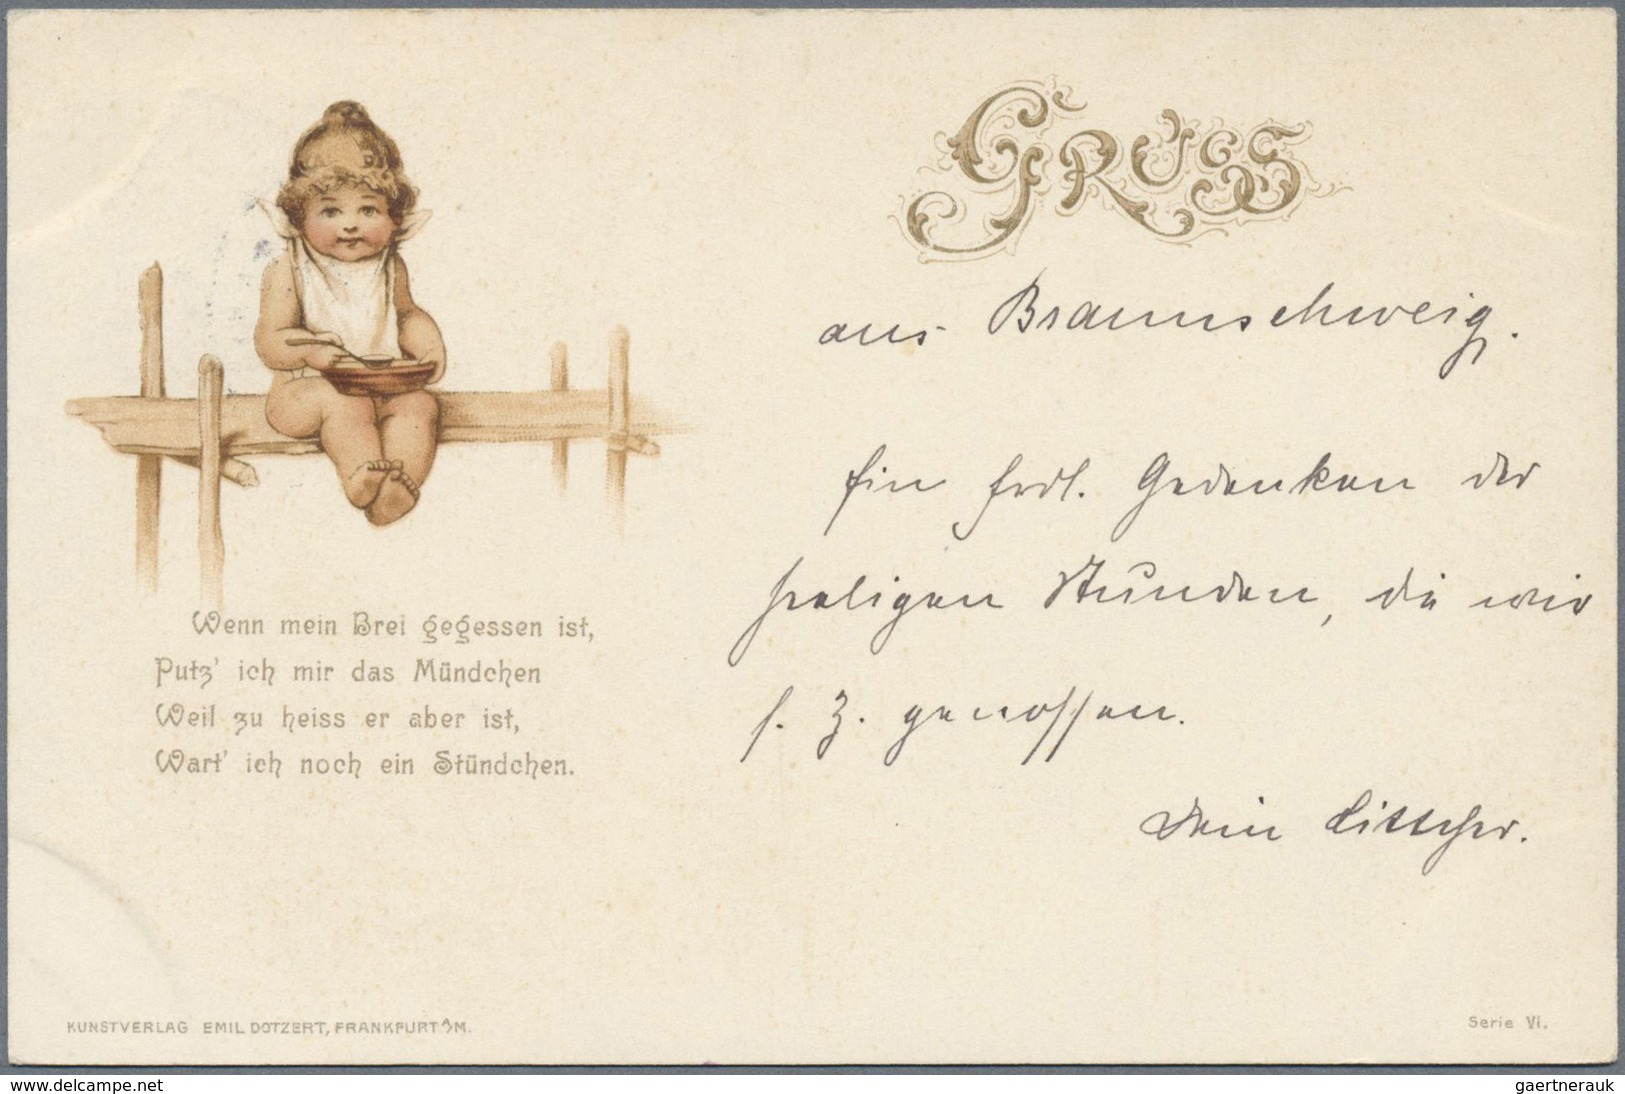 Deutsches Reich - Privatpost (Stadtpost): BRAUNSCHWEIG: 1898/1900, 4 gelaufene Ansichtskarten, davon